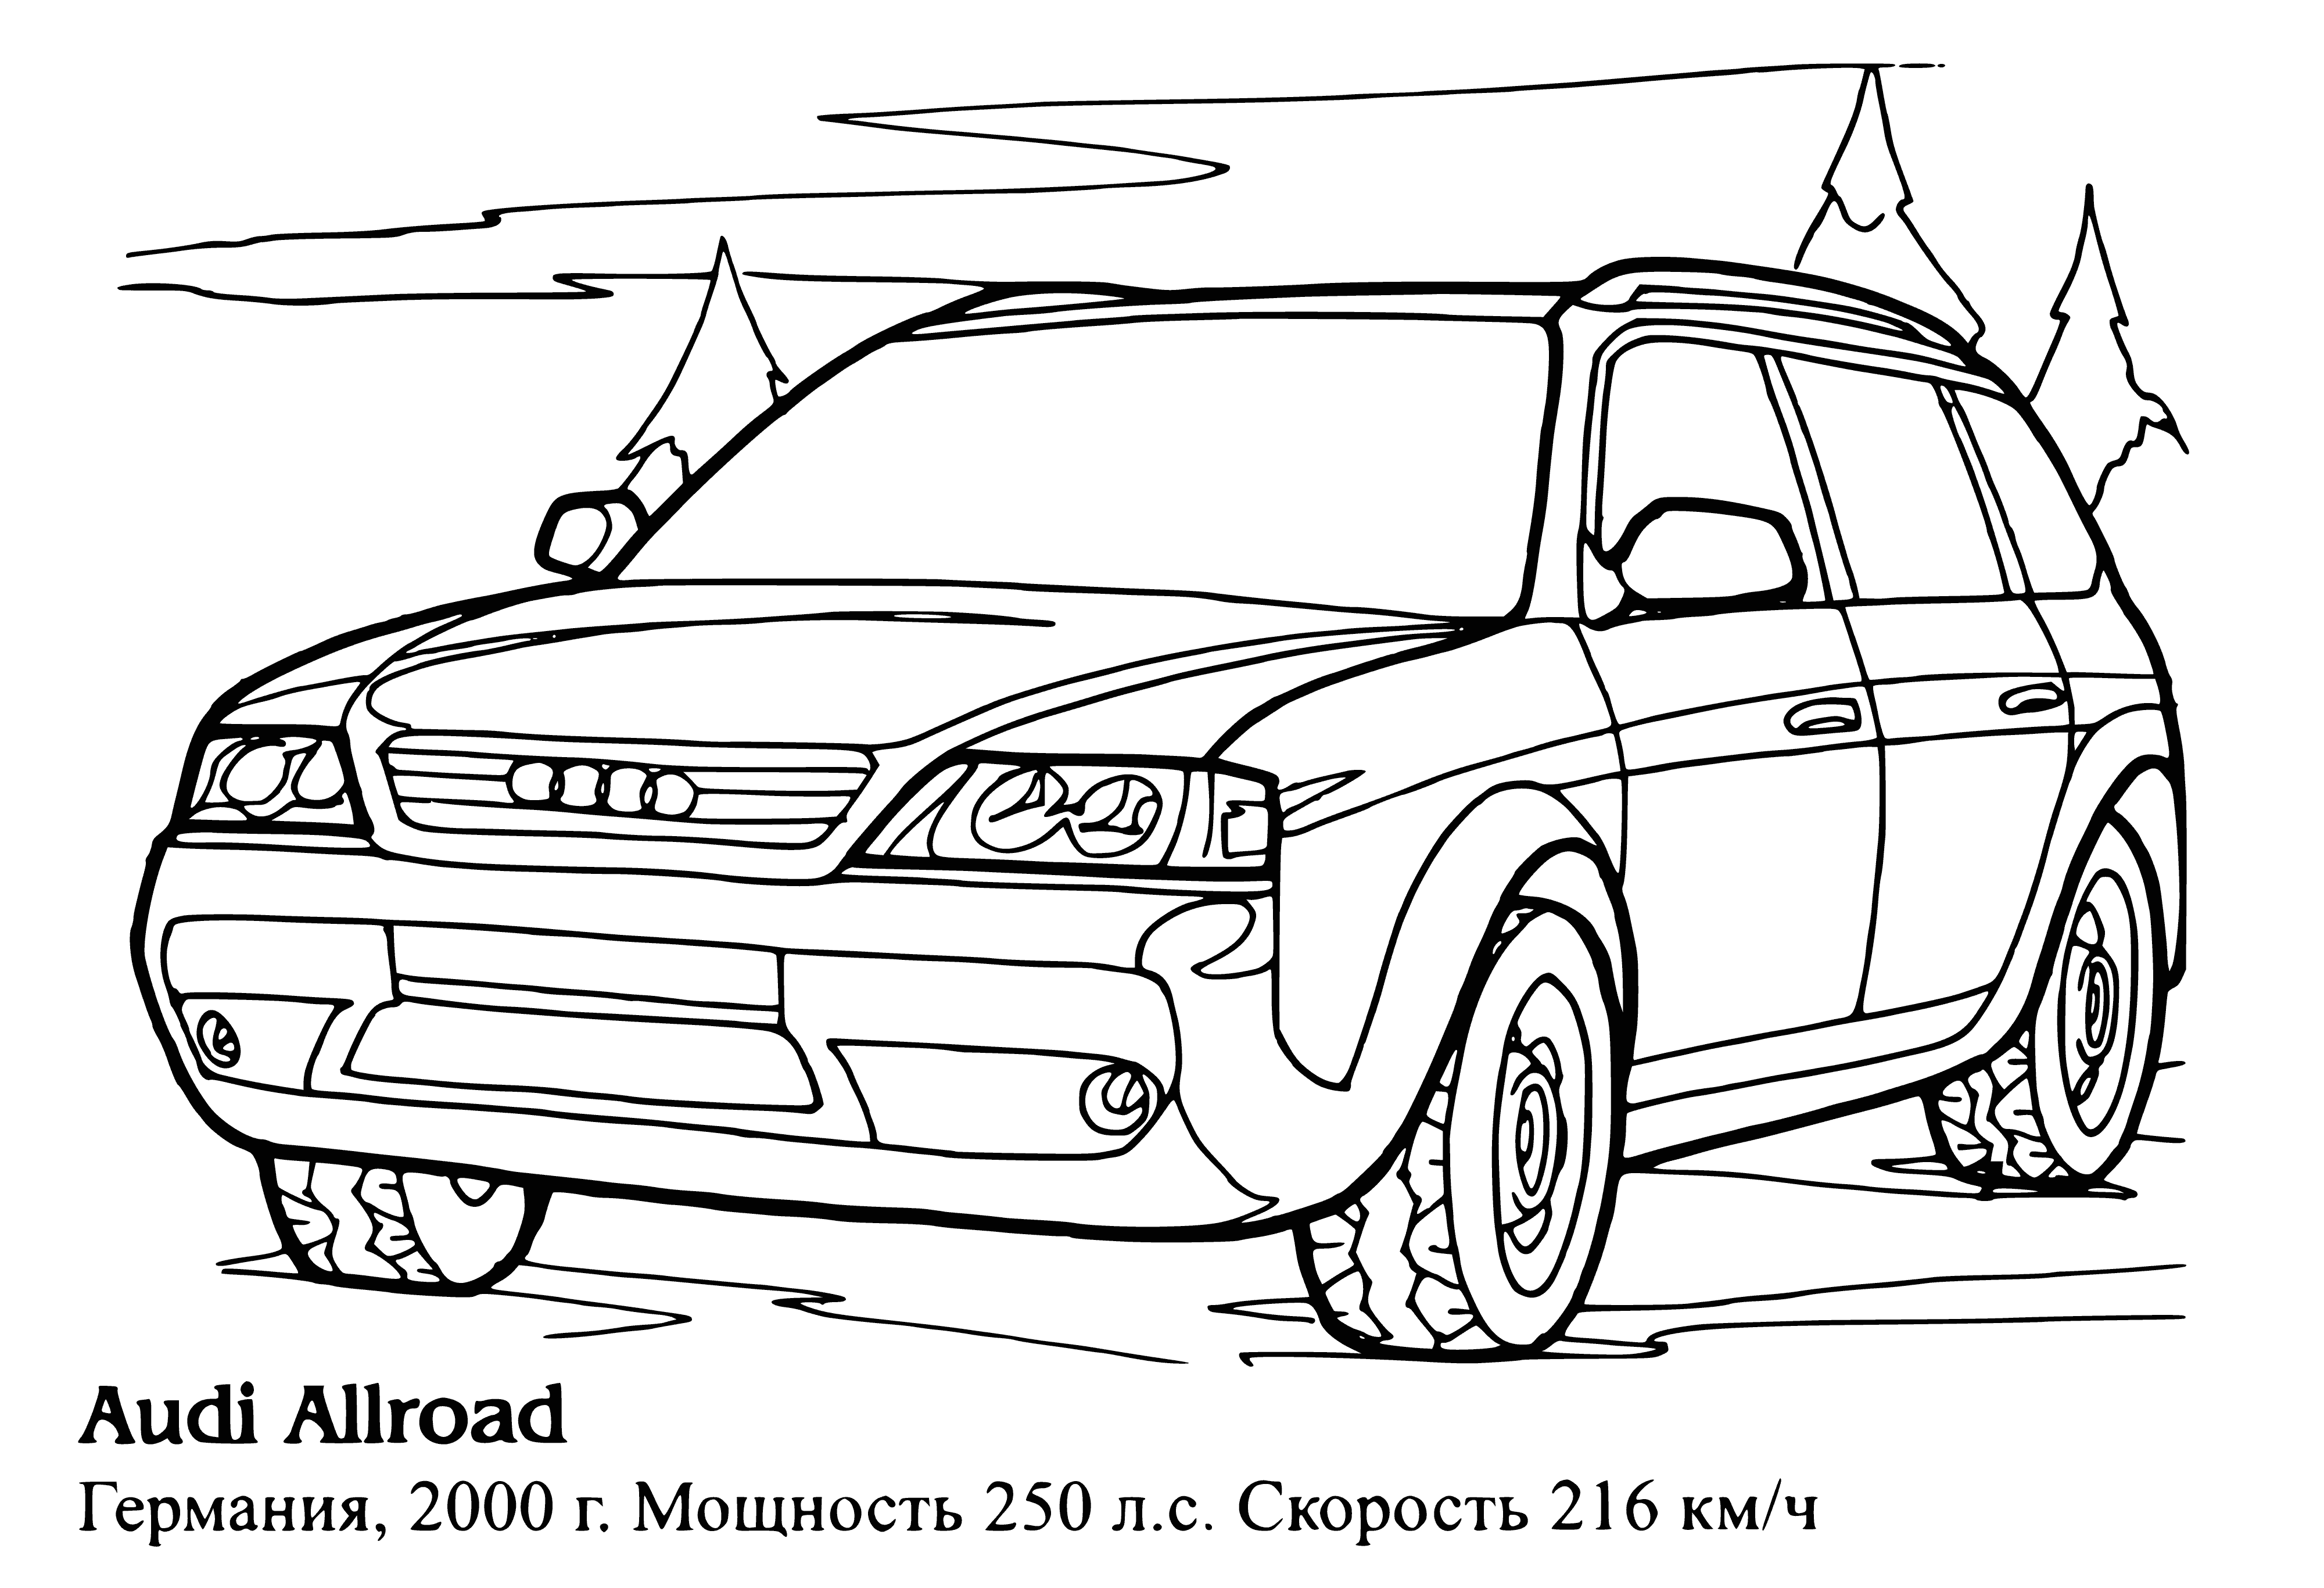 Audi Allroad boyama sayfası